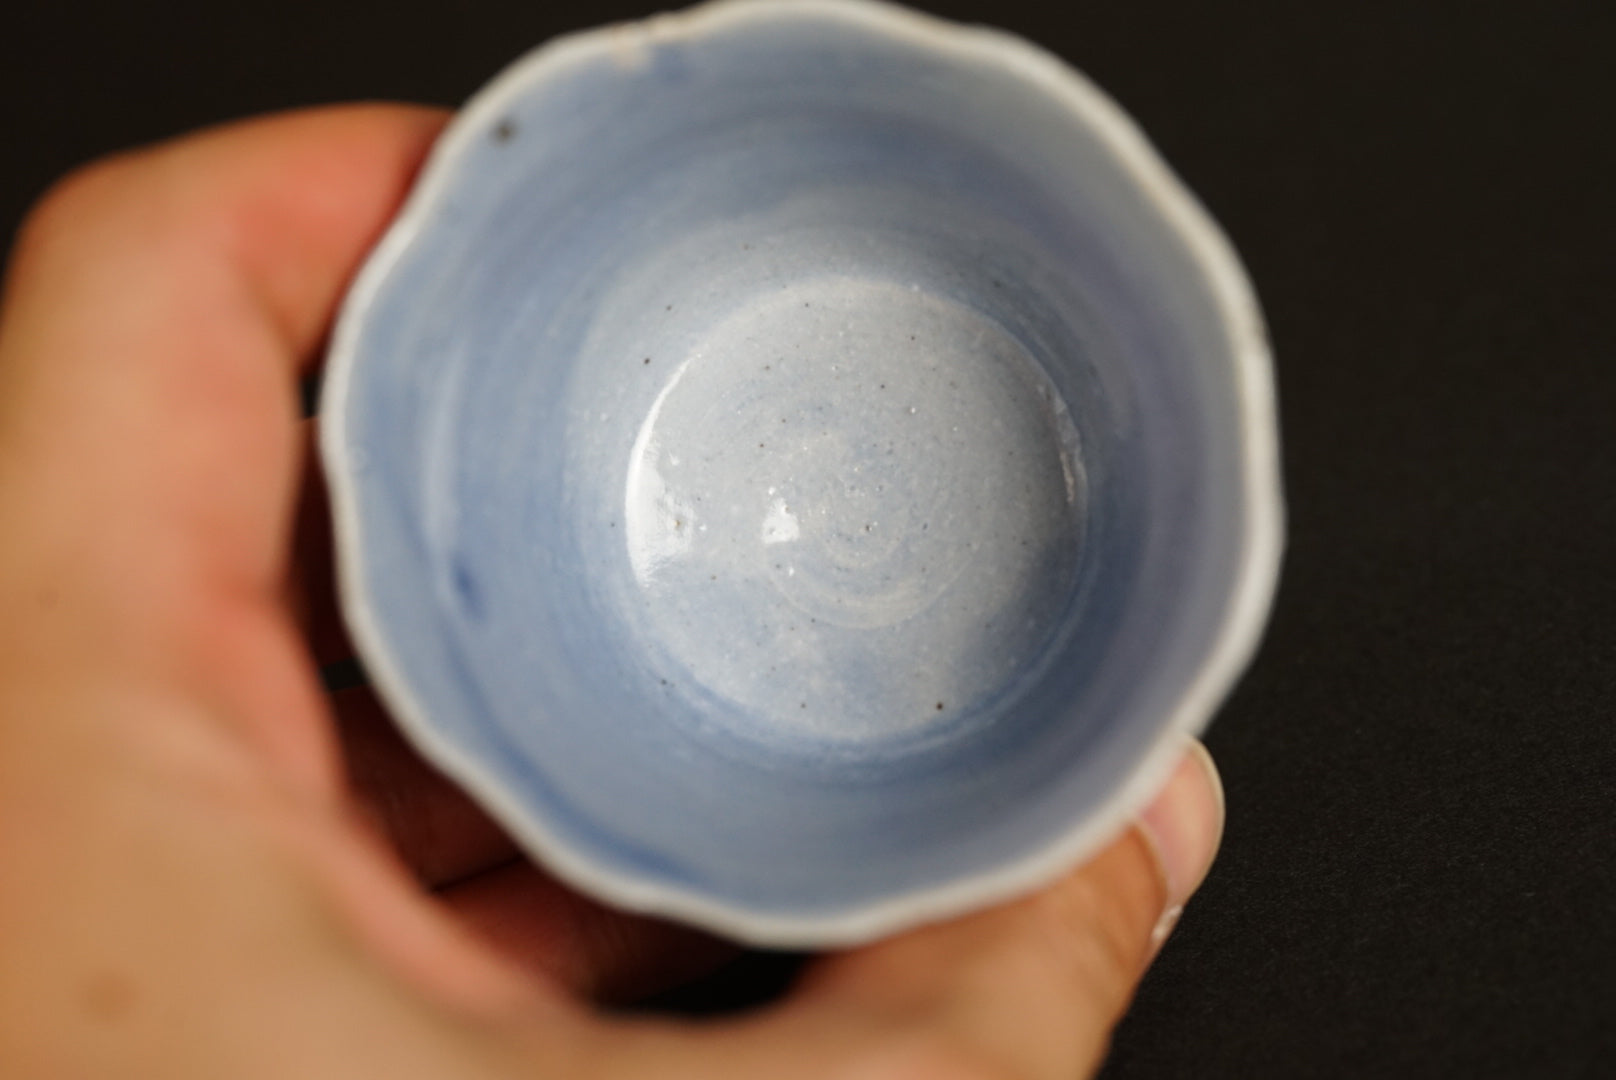 Large Flower Cup / Yuki Matsuba